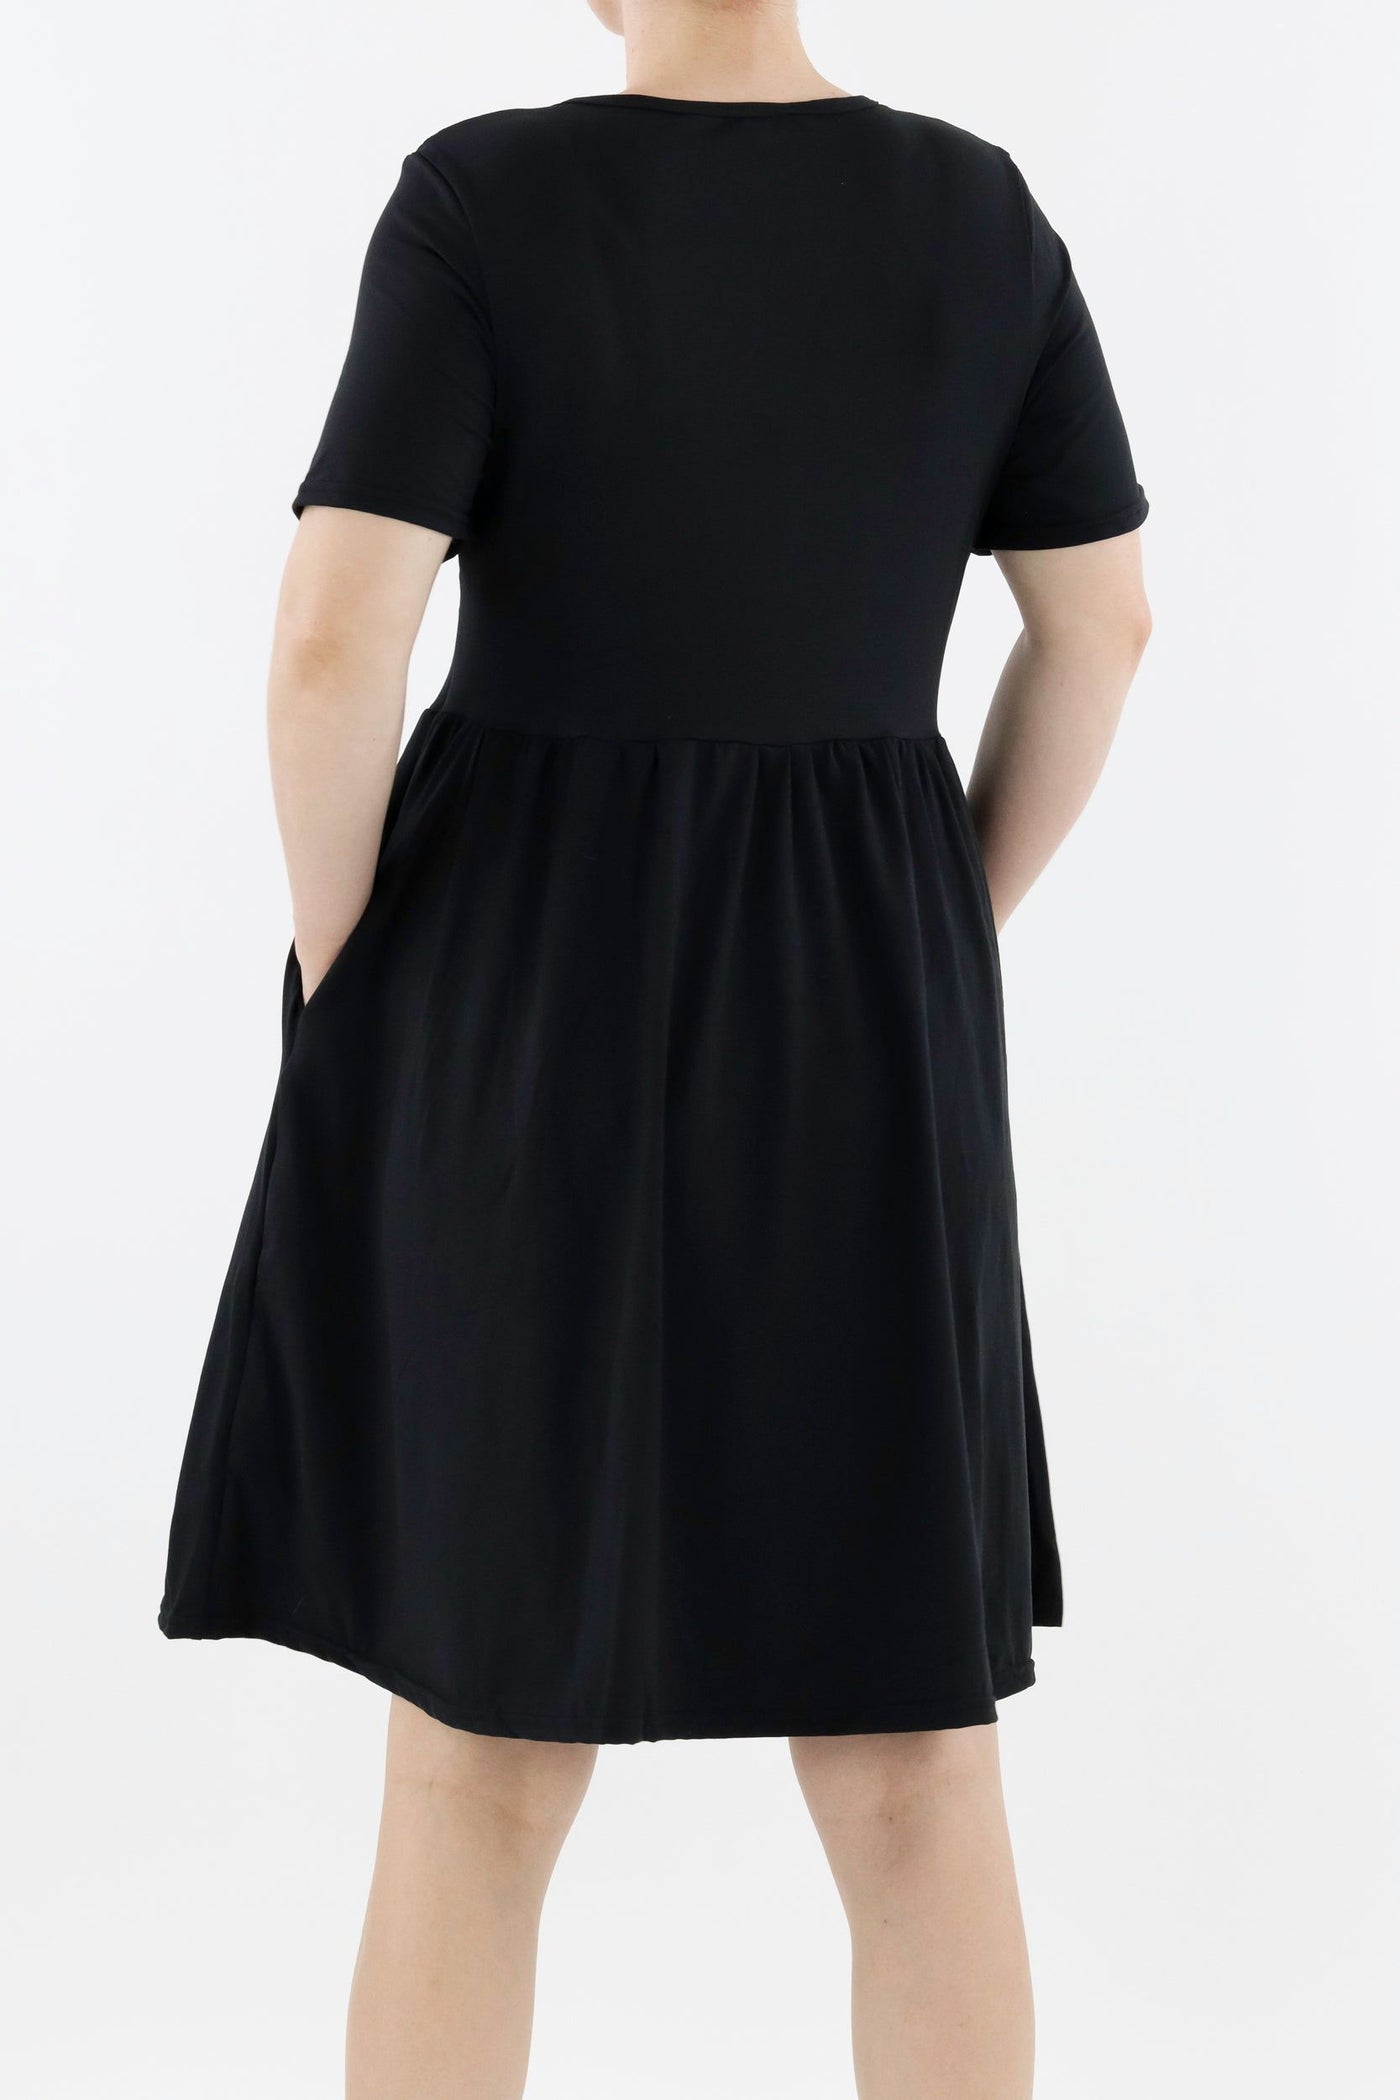 Black - Short Sleeve Skater Dress - Knee Length - Side Pockets Knee Length Skater Dress Pawlie   